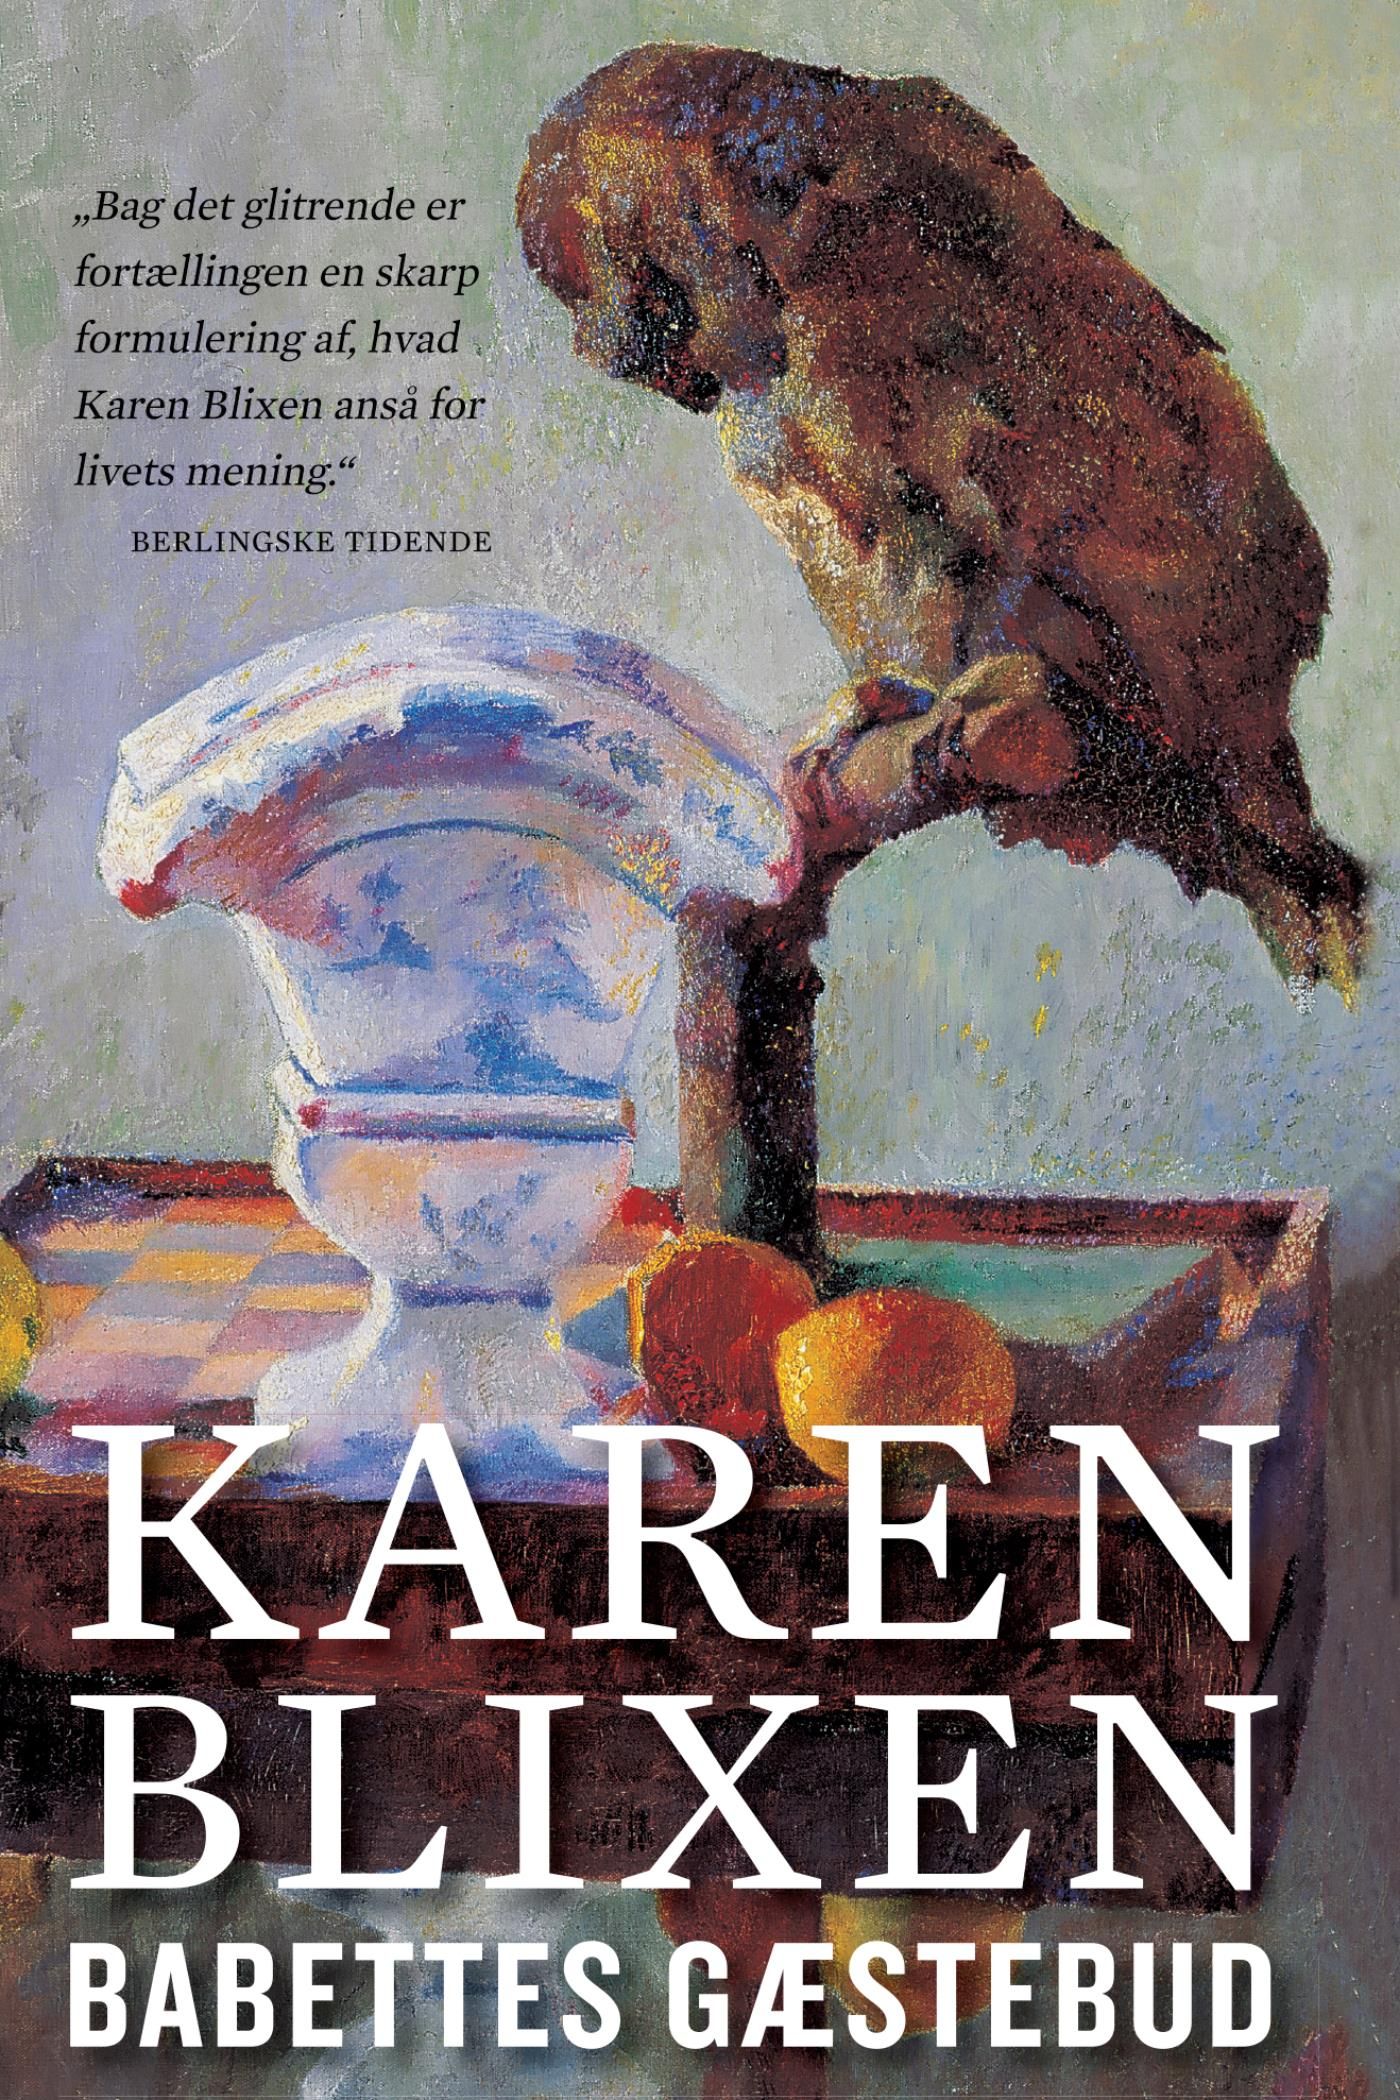 Babettes gæstebud, e-bog af Karen Blixen